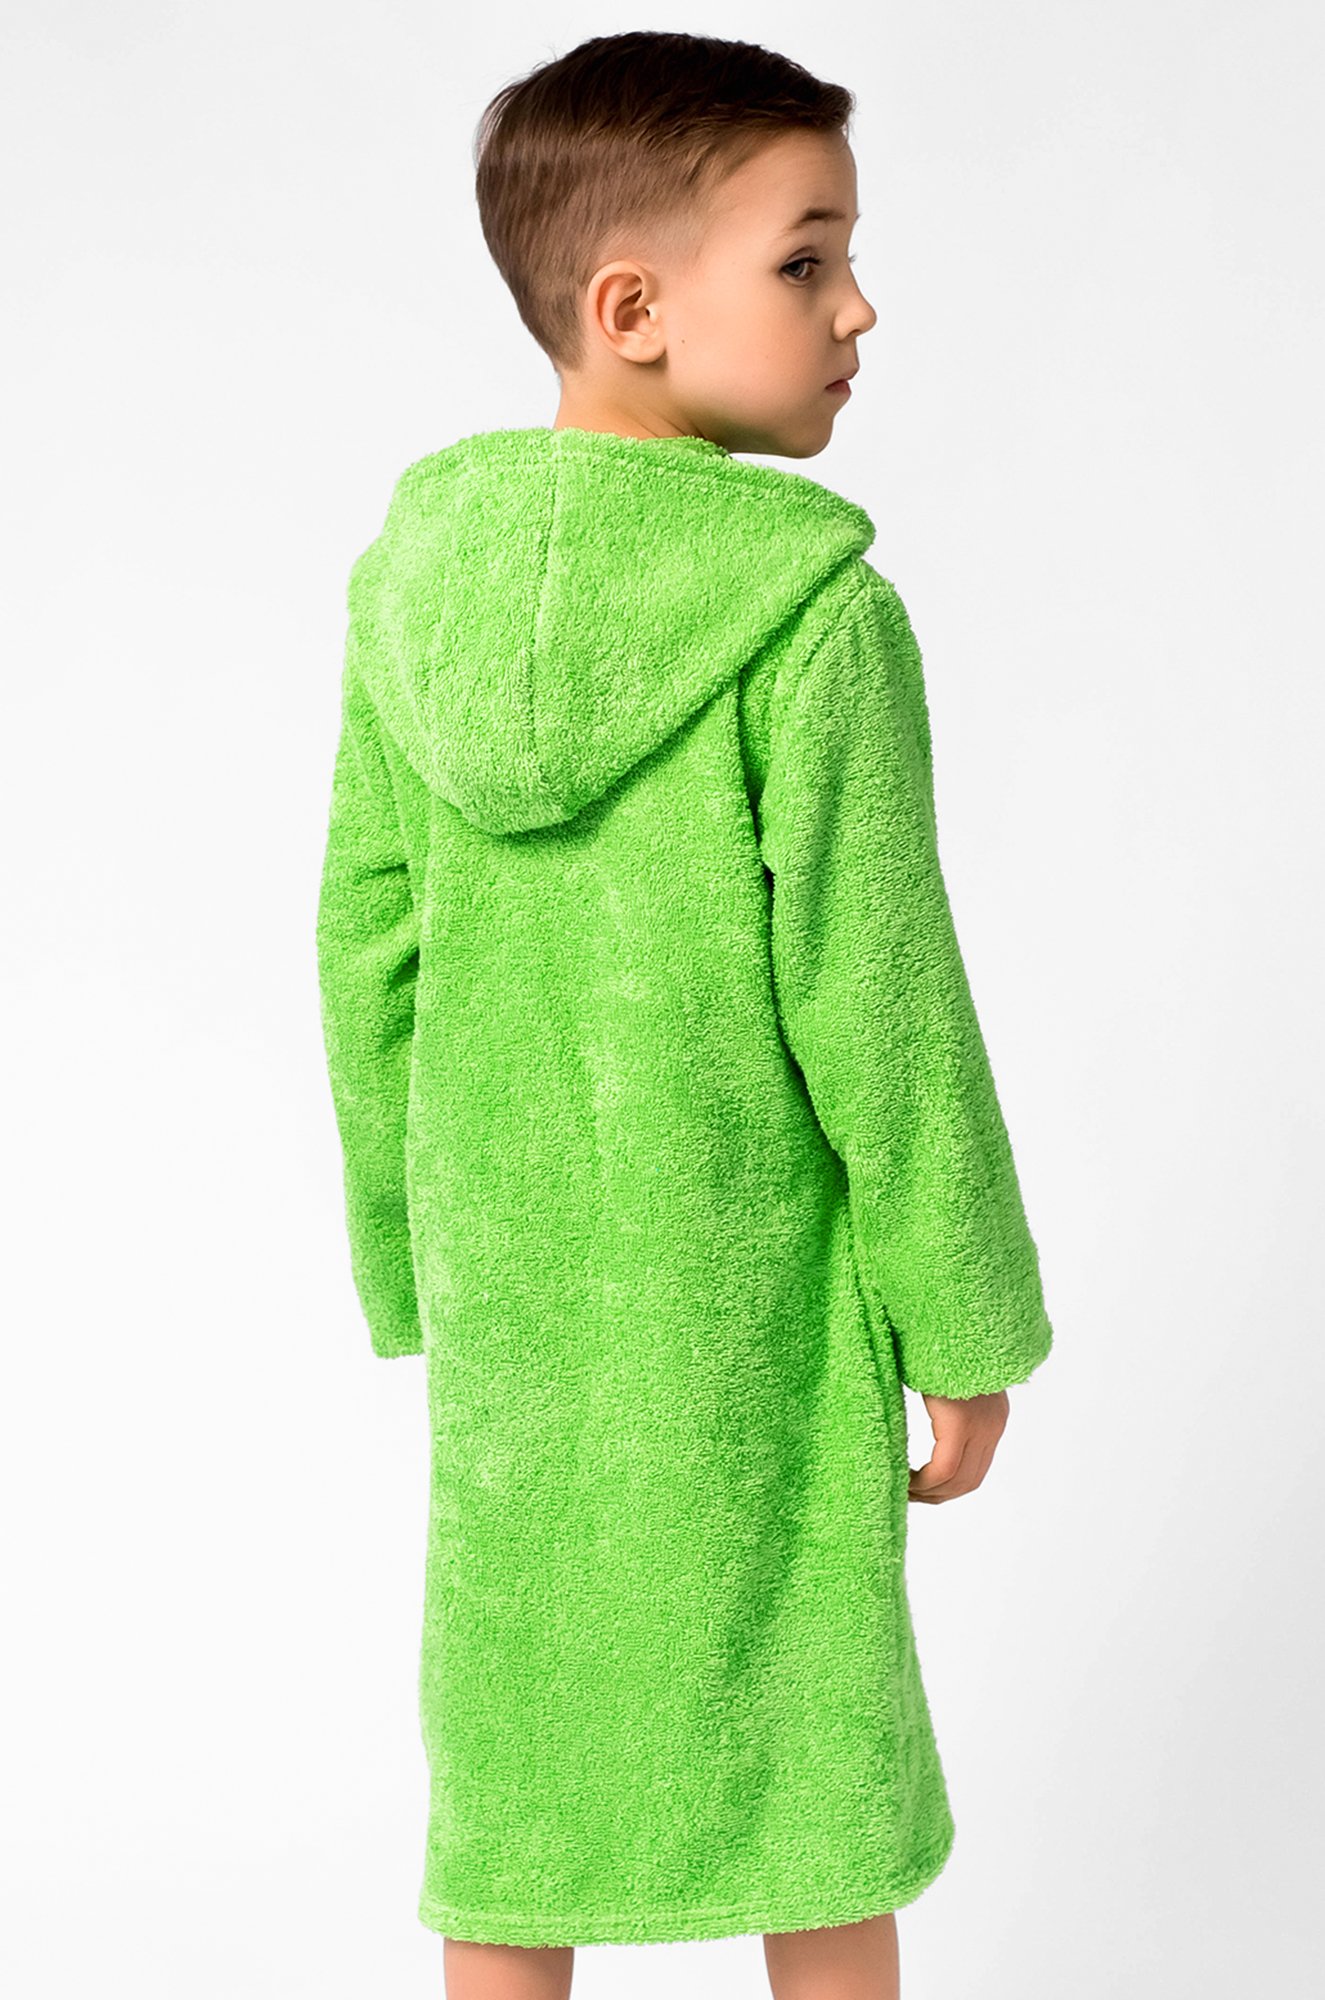 Махровый халат для мальчика Looklie